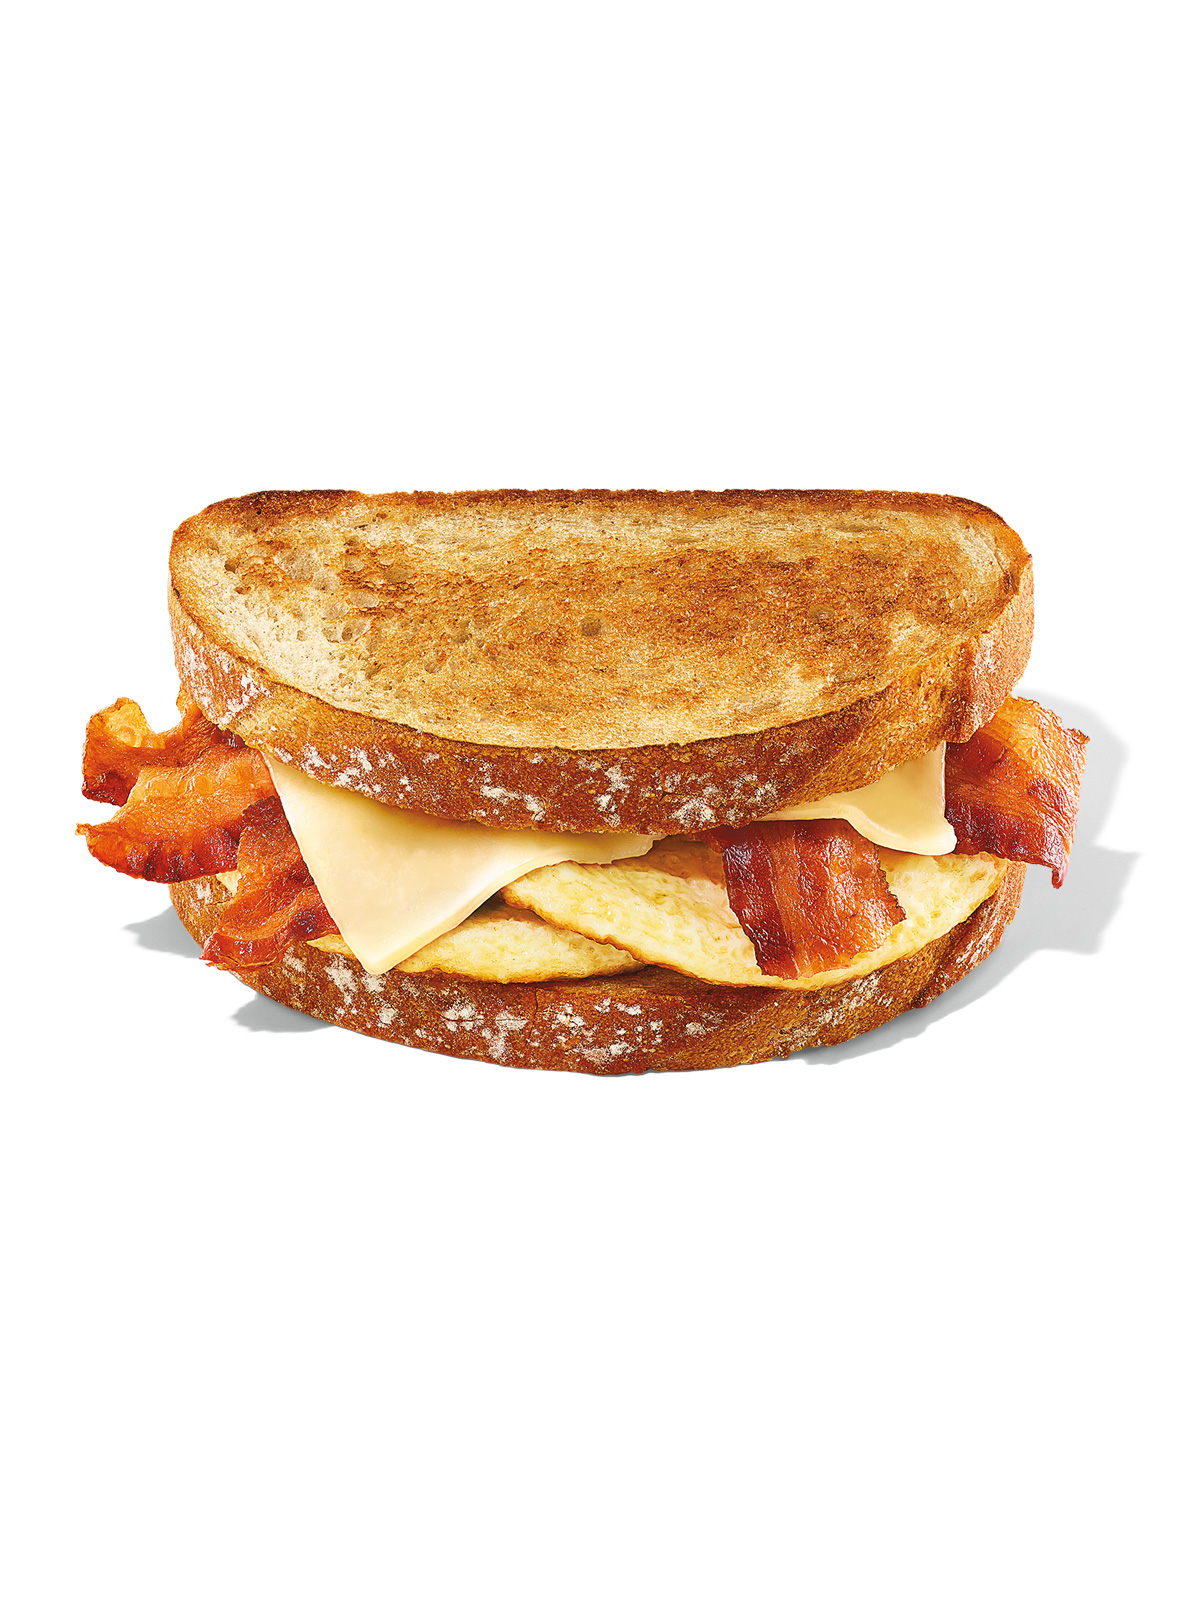 Order Sourdough Breakfast Sandwich food online from Dunkin store, Corning on bringmethat.com